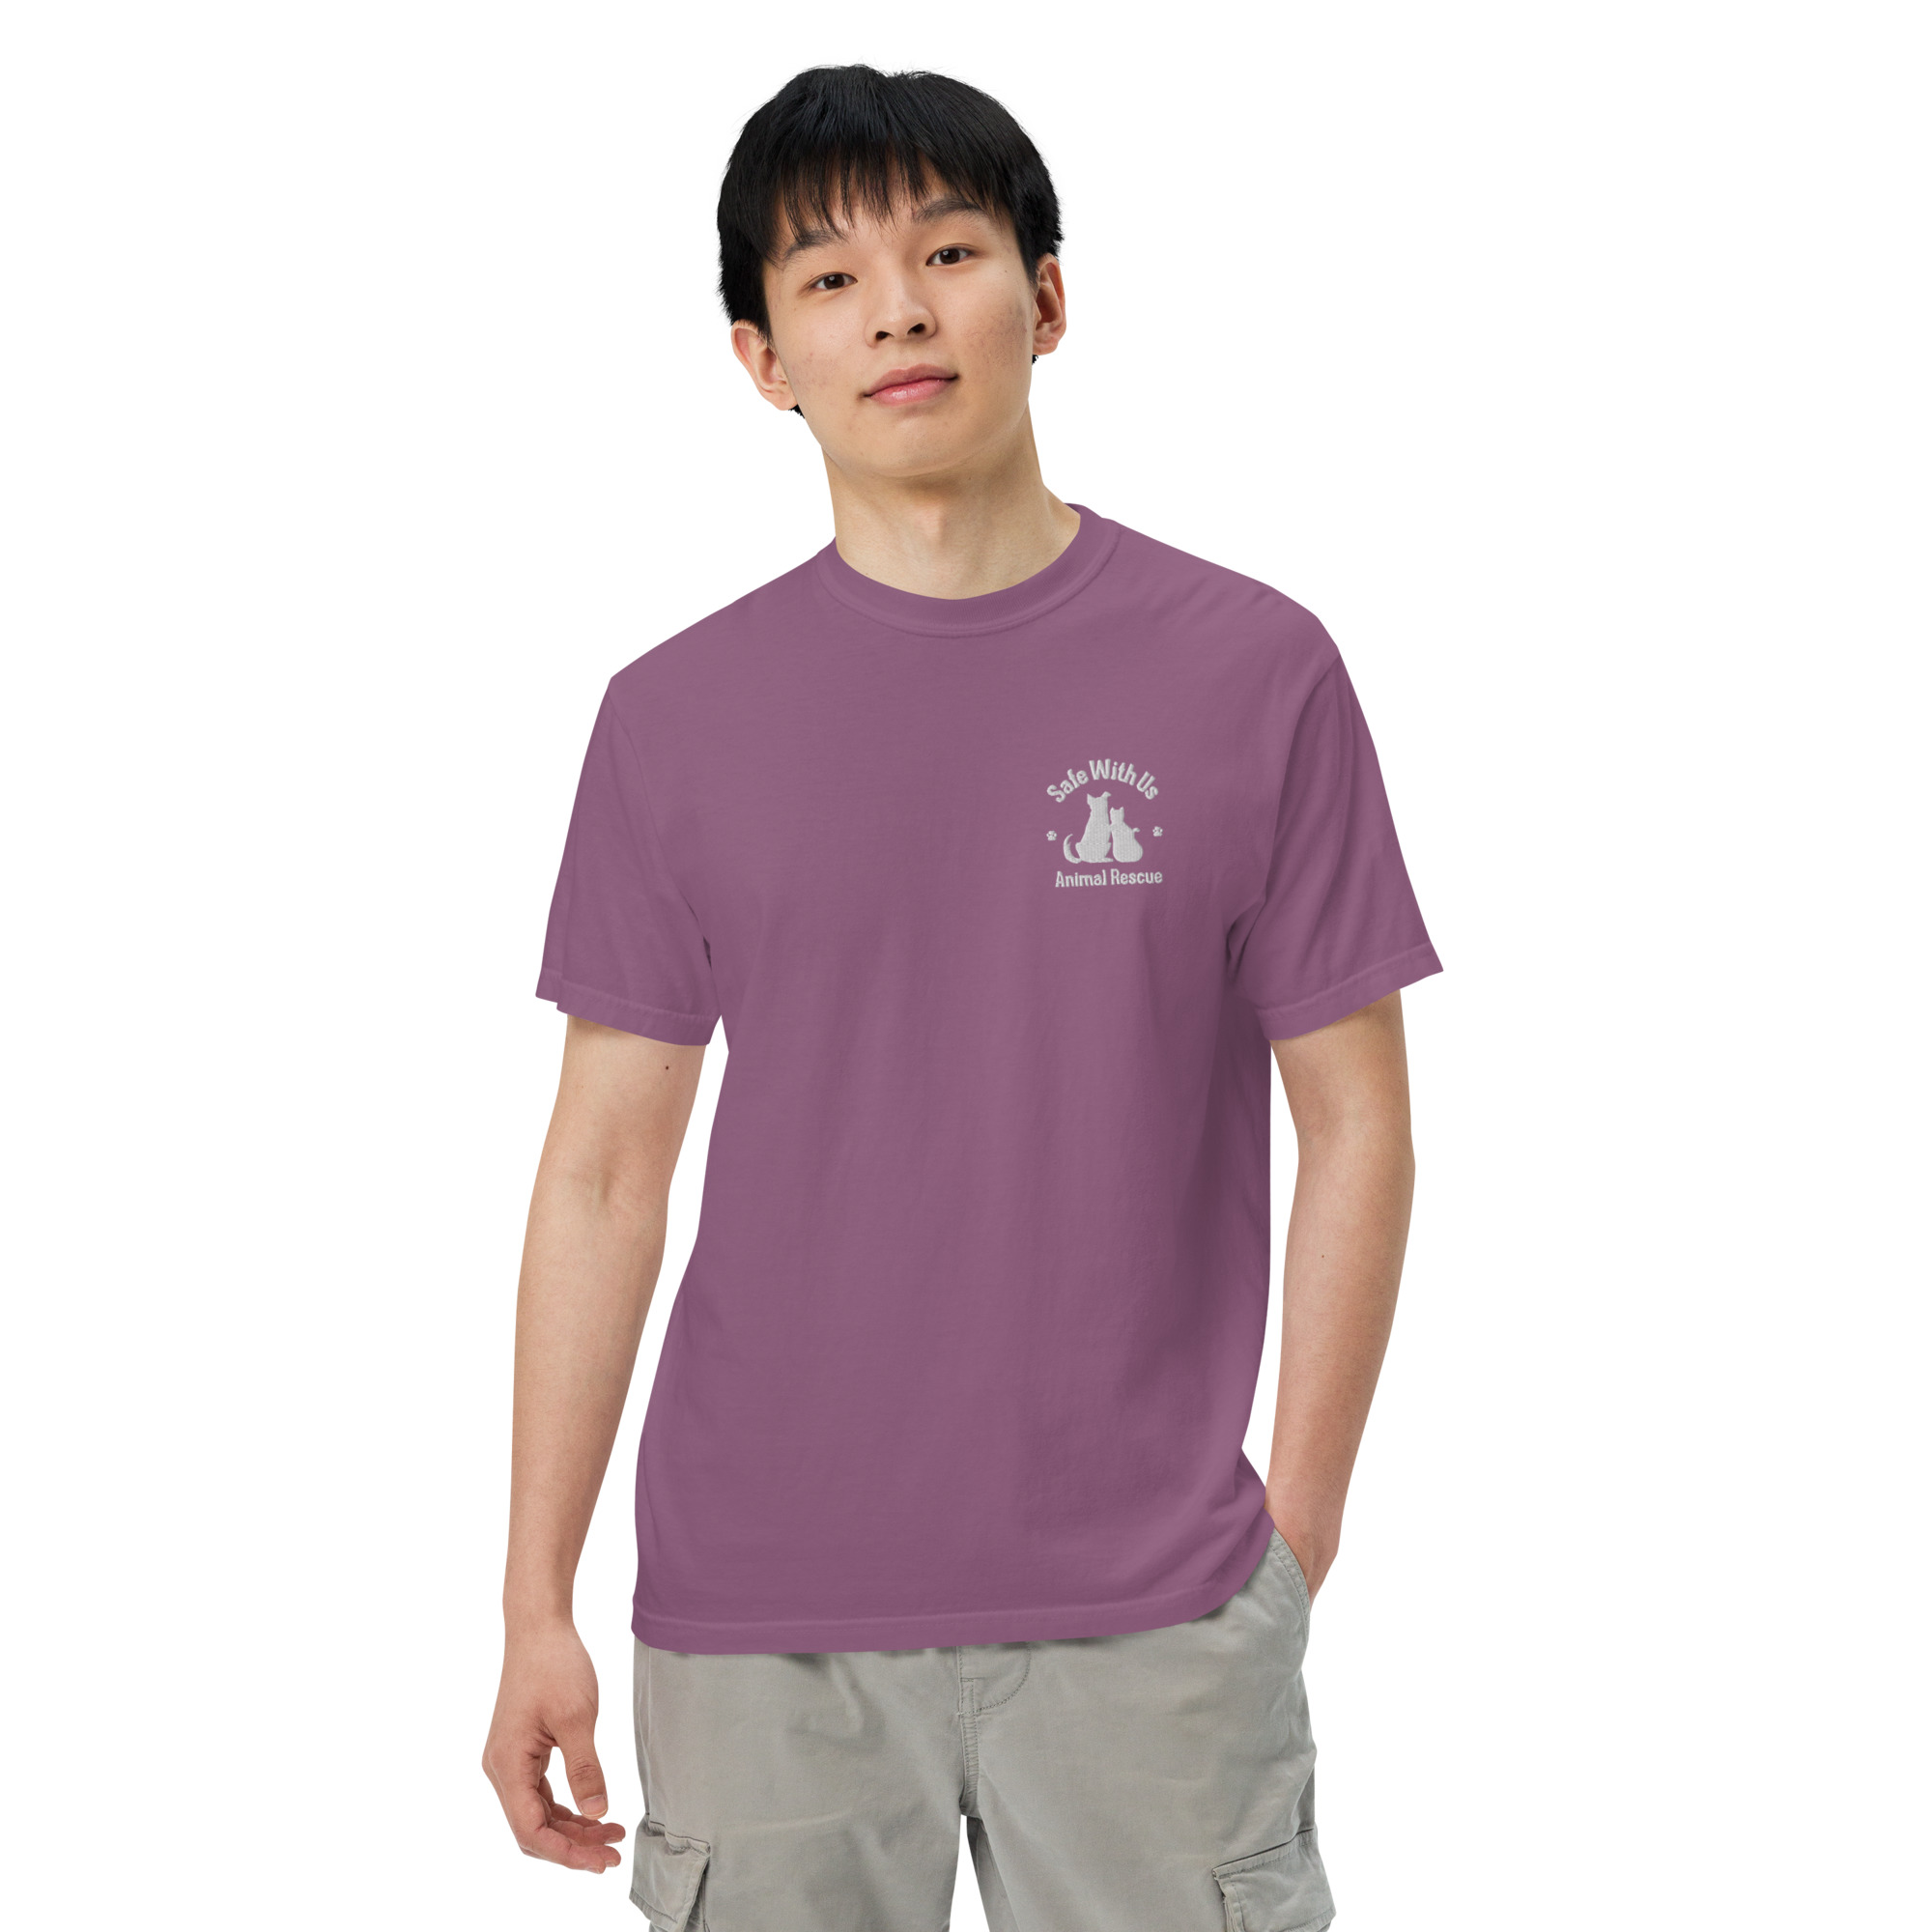 mens-garment-dyed-heavyweight-t-shirt-berry-front-2-6415fedc27535.jpg